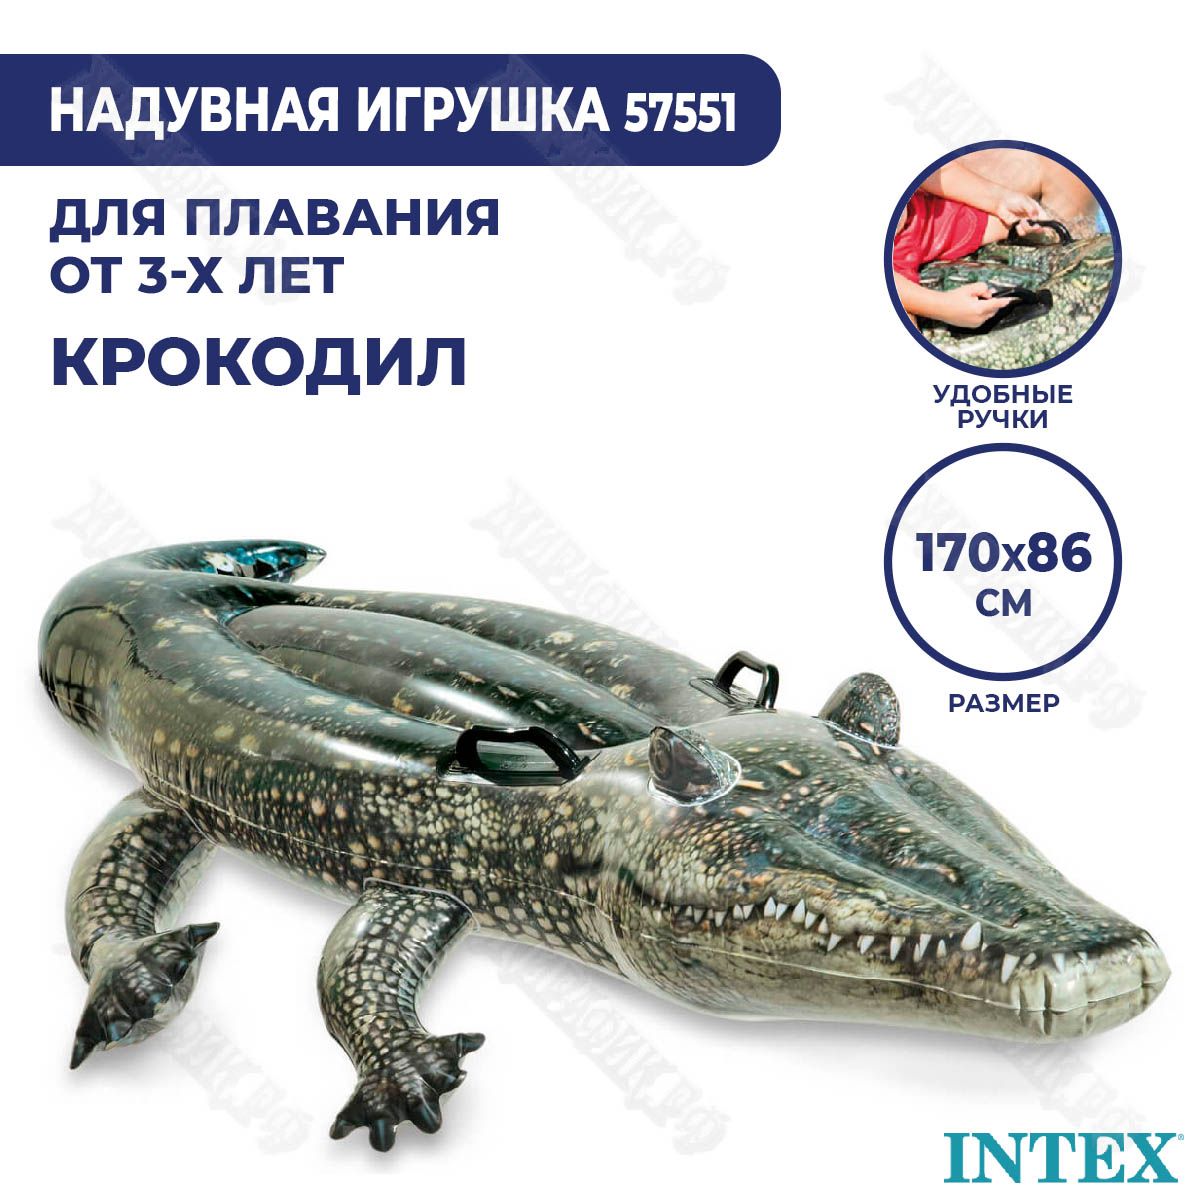 Надувная игрушка-наездник для плавания Крокодил Intex 57551